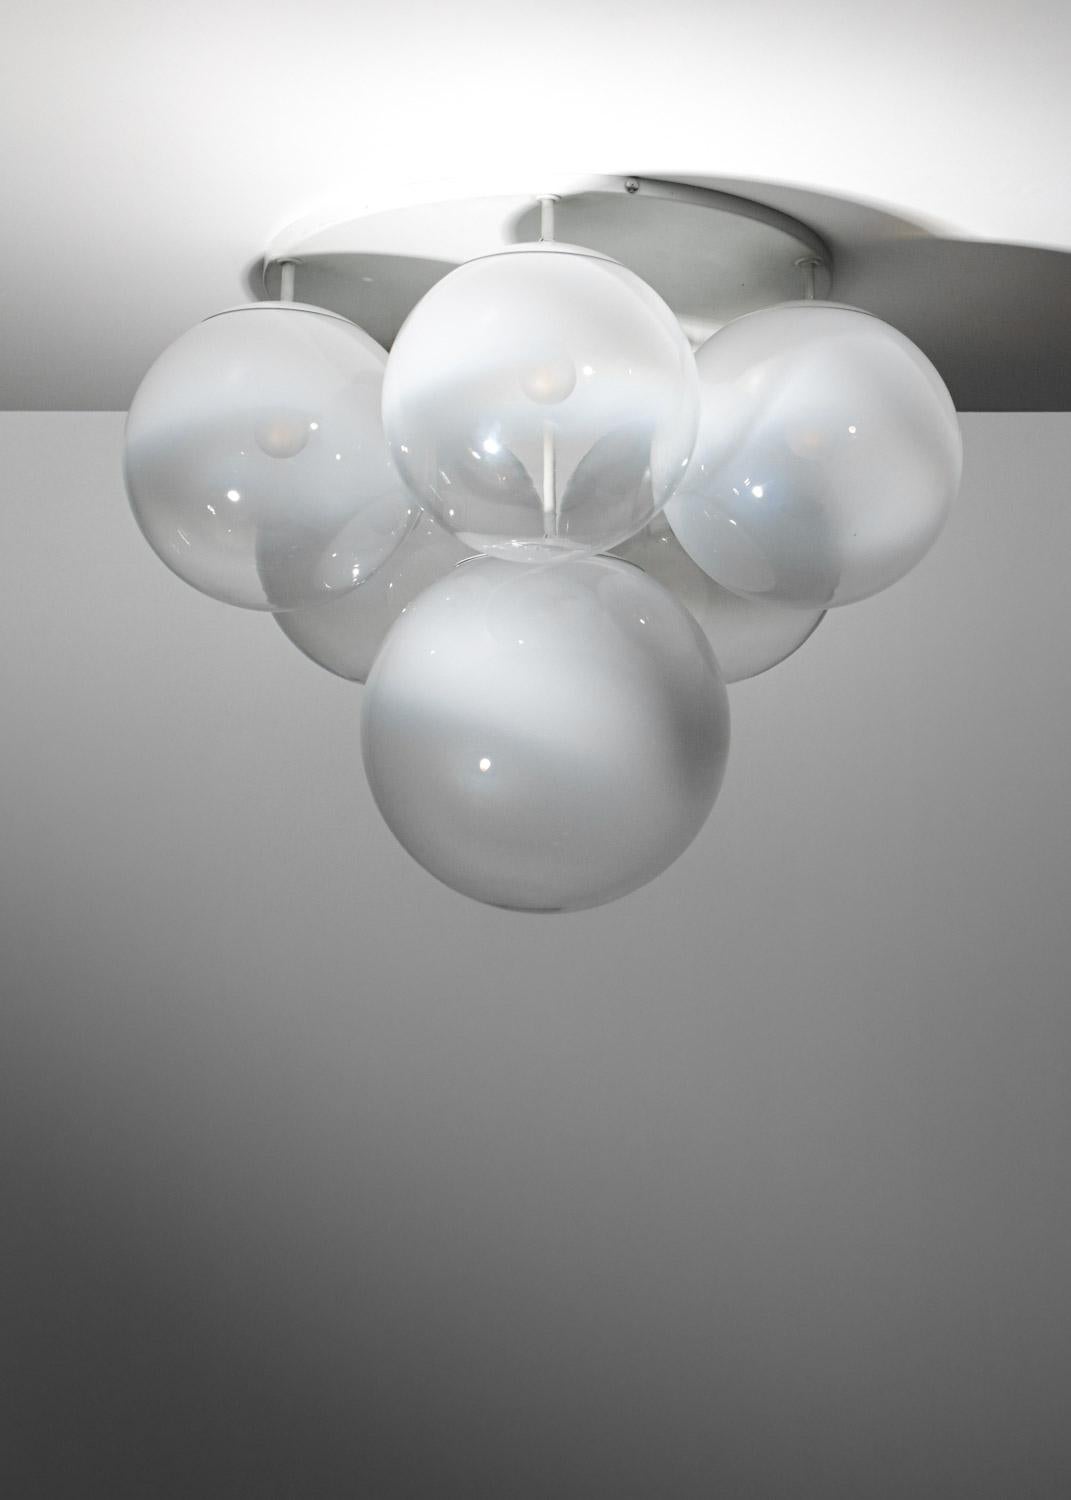 Pair of 70's Italian ceiling lights in Murano glass Gino Sarfatti style - G723 - 13